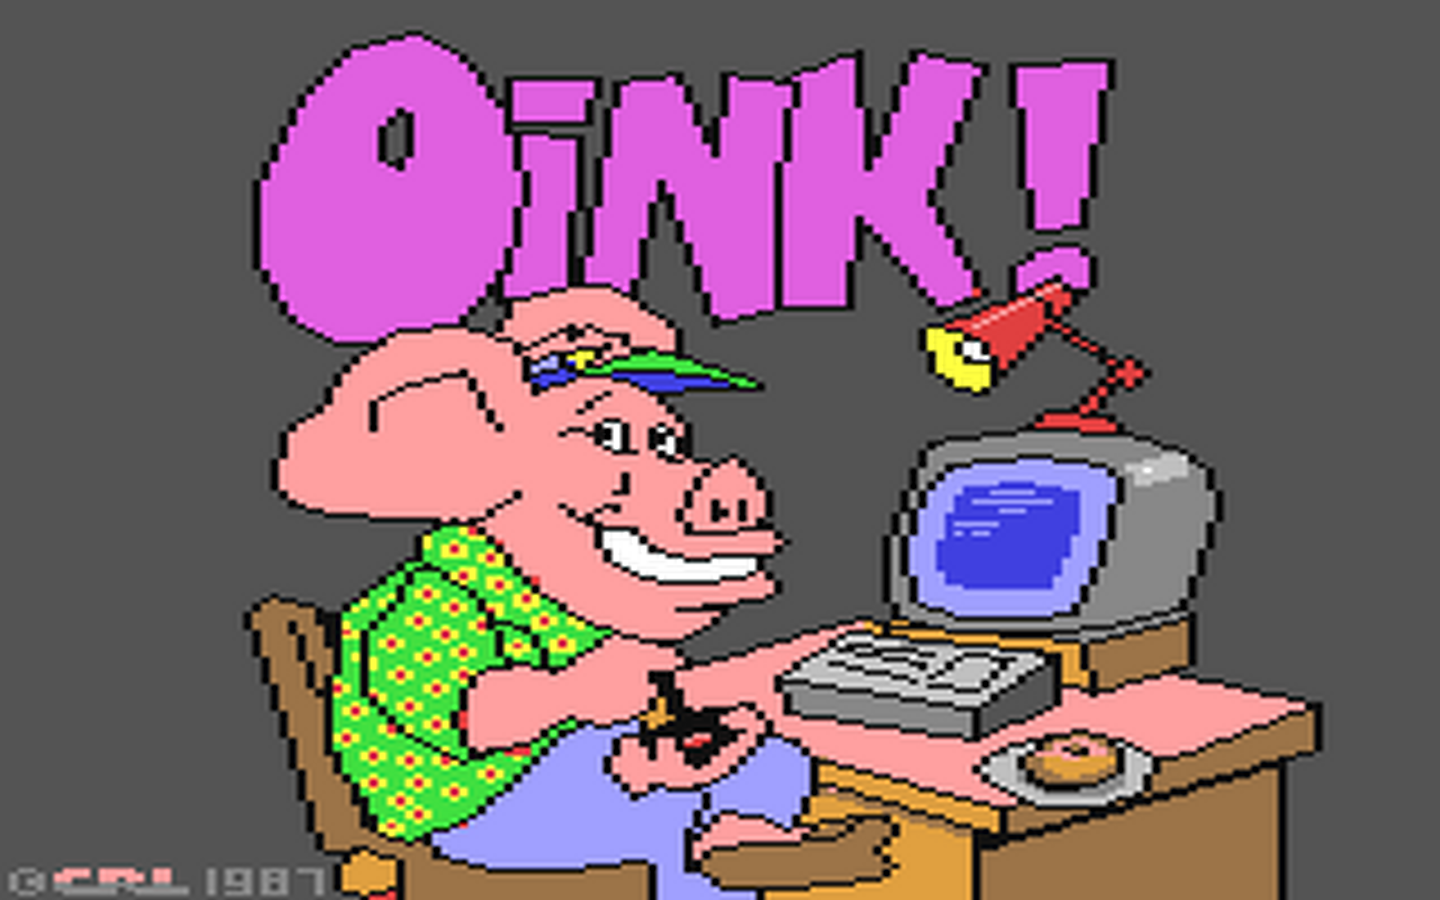 C64 GameBase Oink! CRL_(Computer_Rentals_Limited) 1987